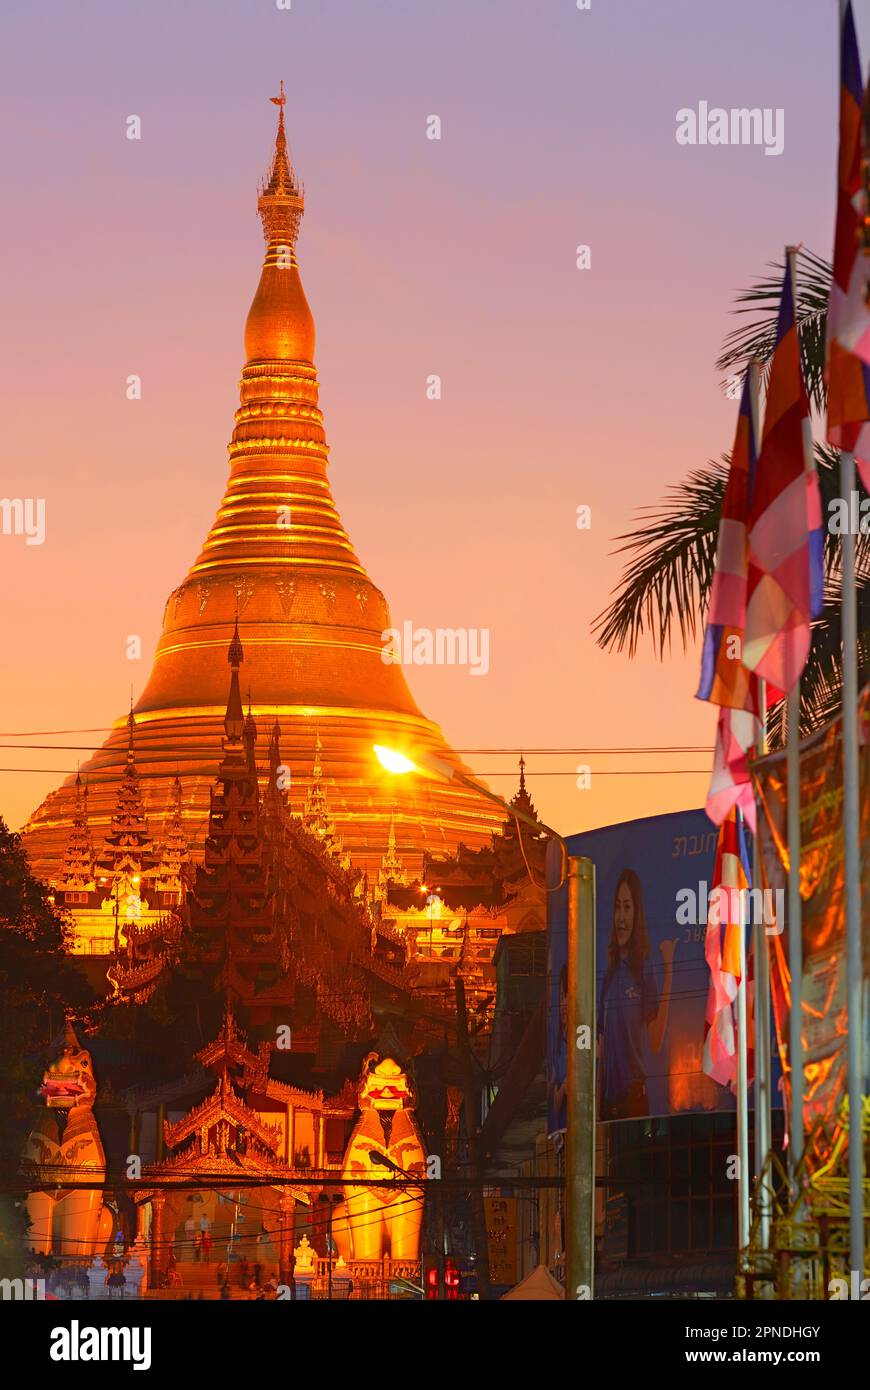 Le stupa géant de la pagode Shwedagon avec des drapeaux bouddhistes au premier plan au crépuscule, Yangon, Myanmar. Banque D'Images